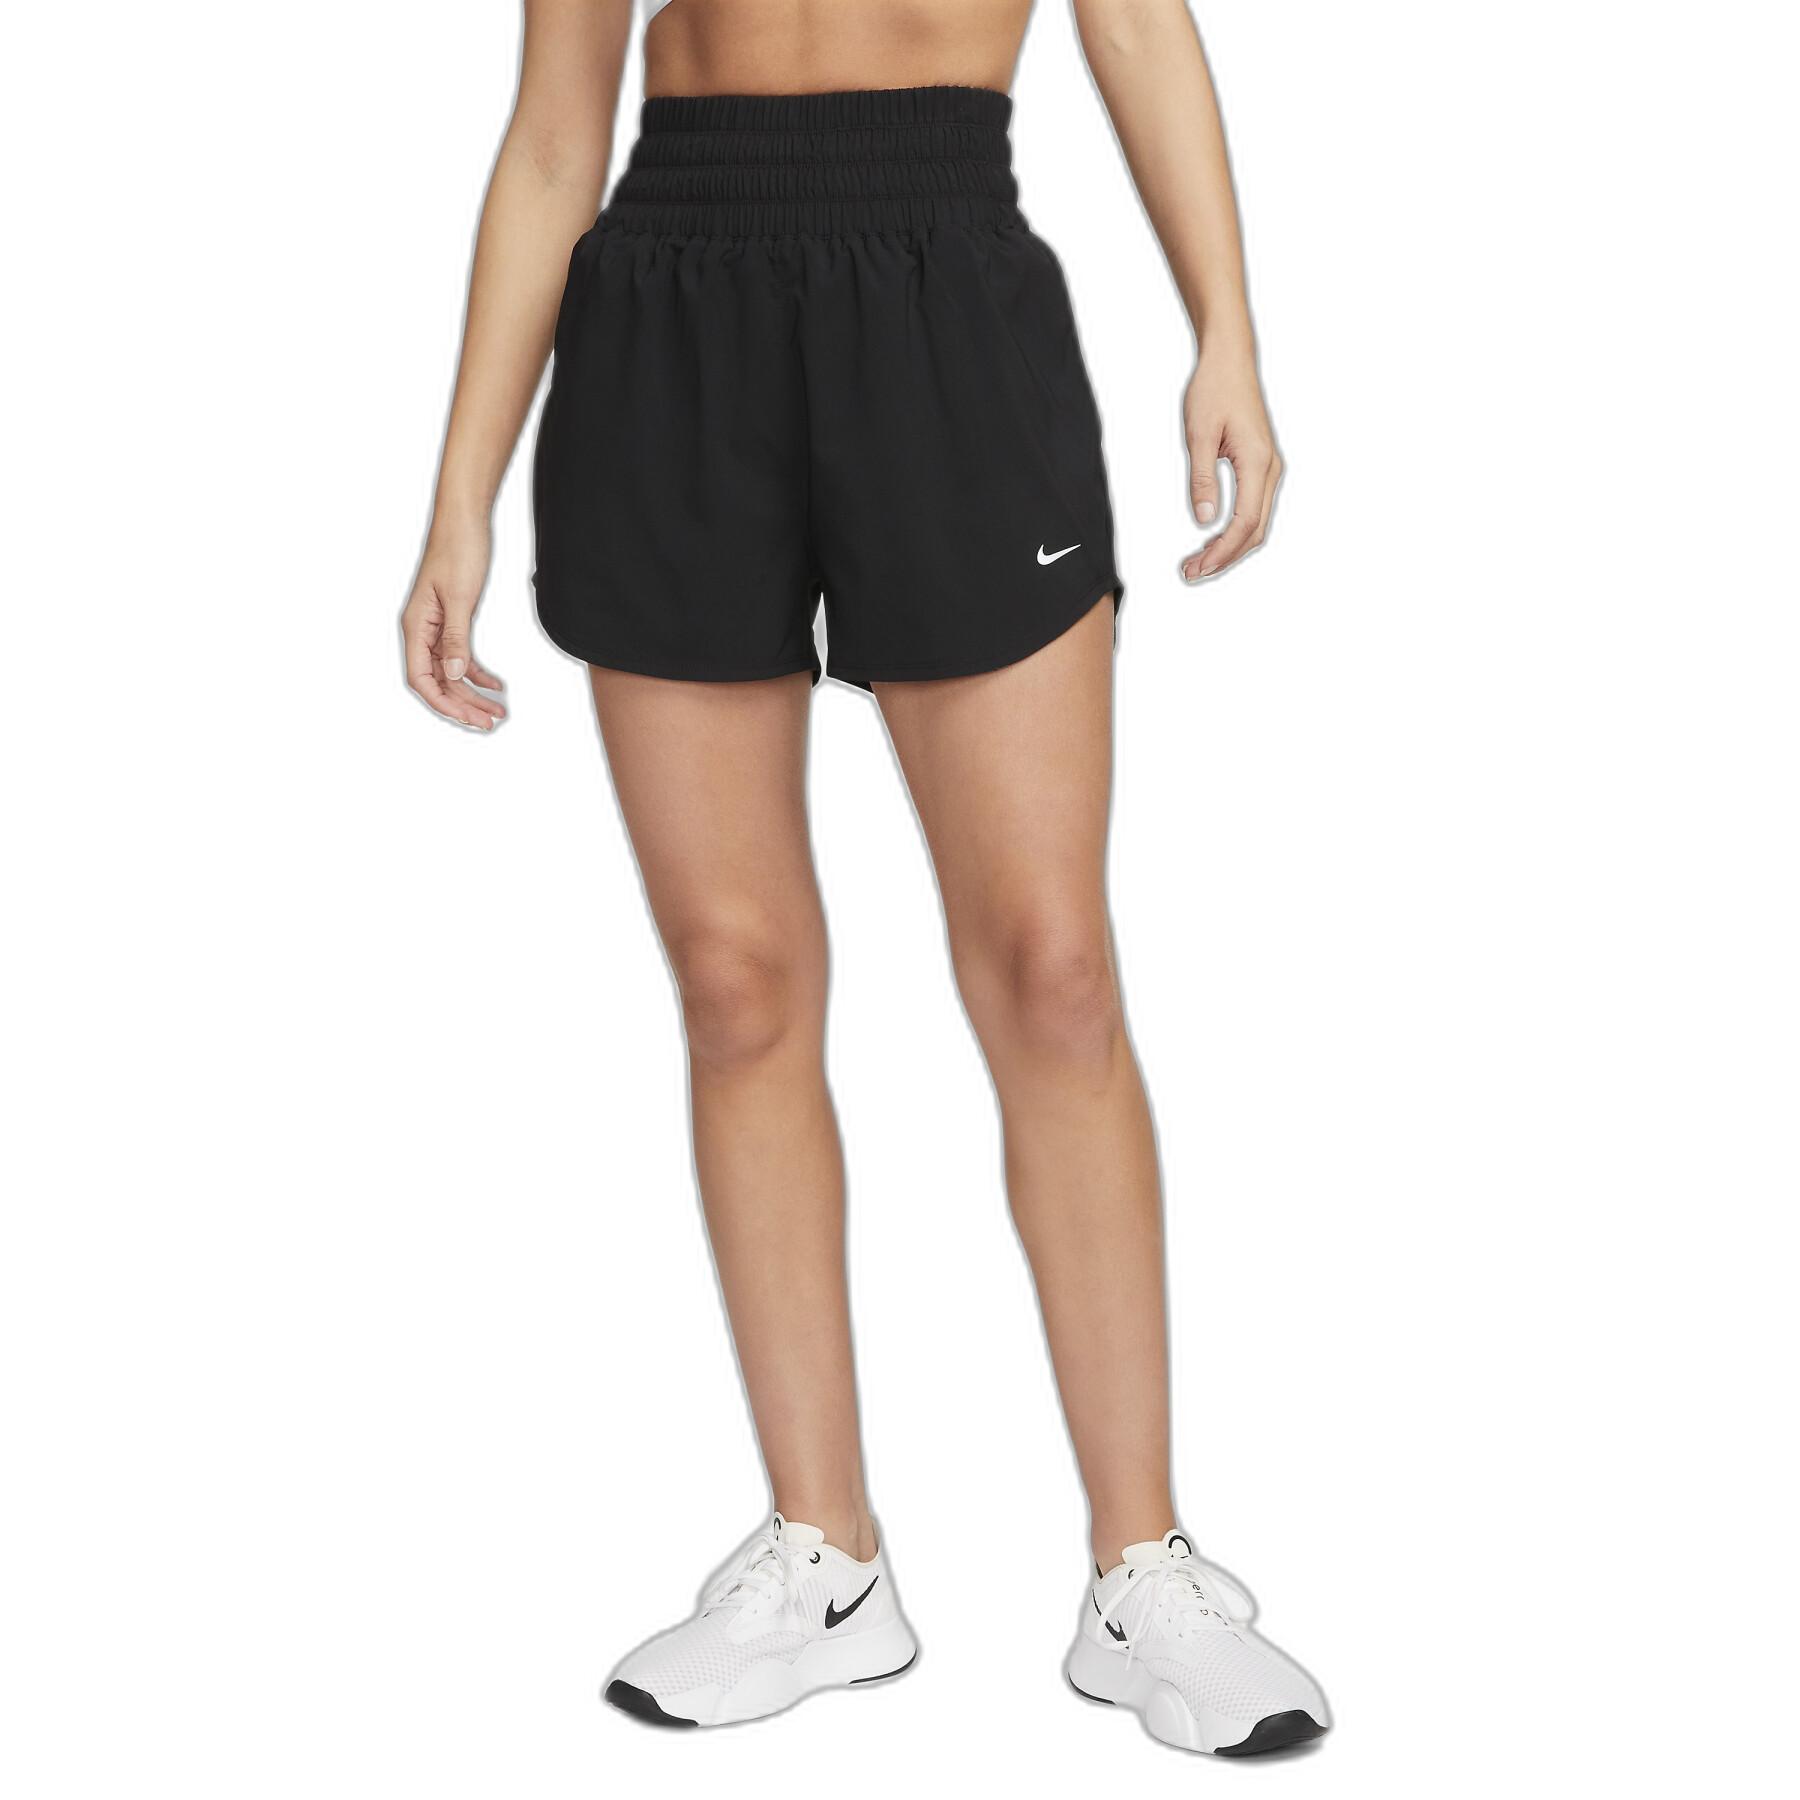 Shorts für Frauen Nike One Dri-FIT Ultr Hr 3 Br